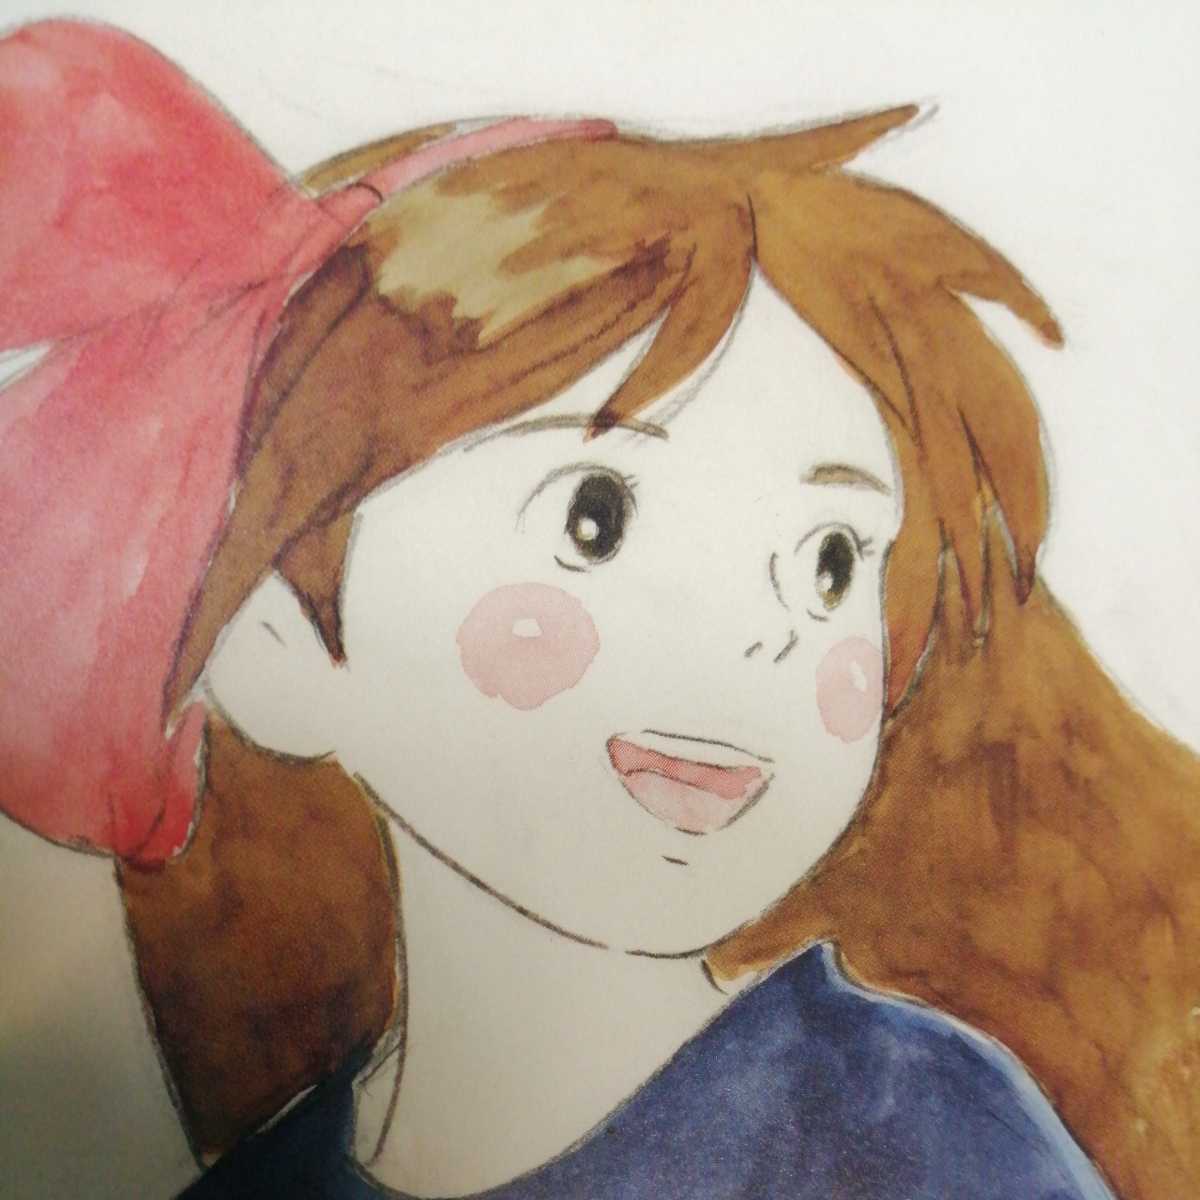  Studio Ghibli. Majo no Takkyubin. близко глициния ... образ панель. скетч. расположение. альбом с иллюстрациями. порез .. акварельная живопись. осмотр ) открытка. постер. исходная картина. Miyazaki .d